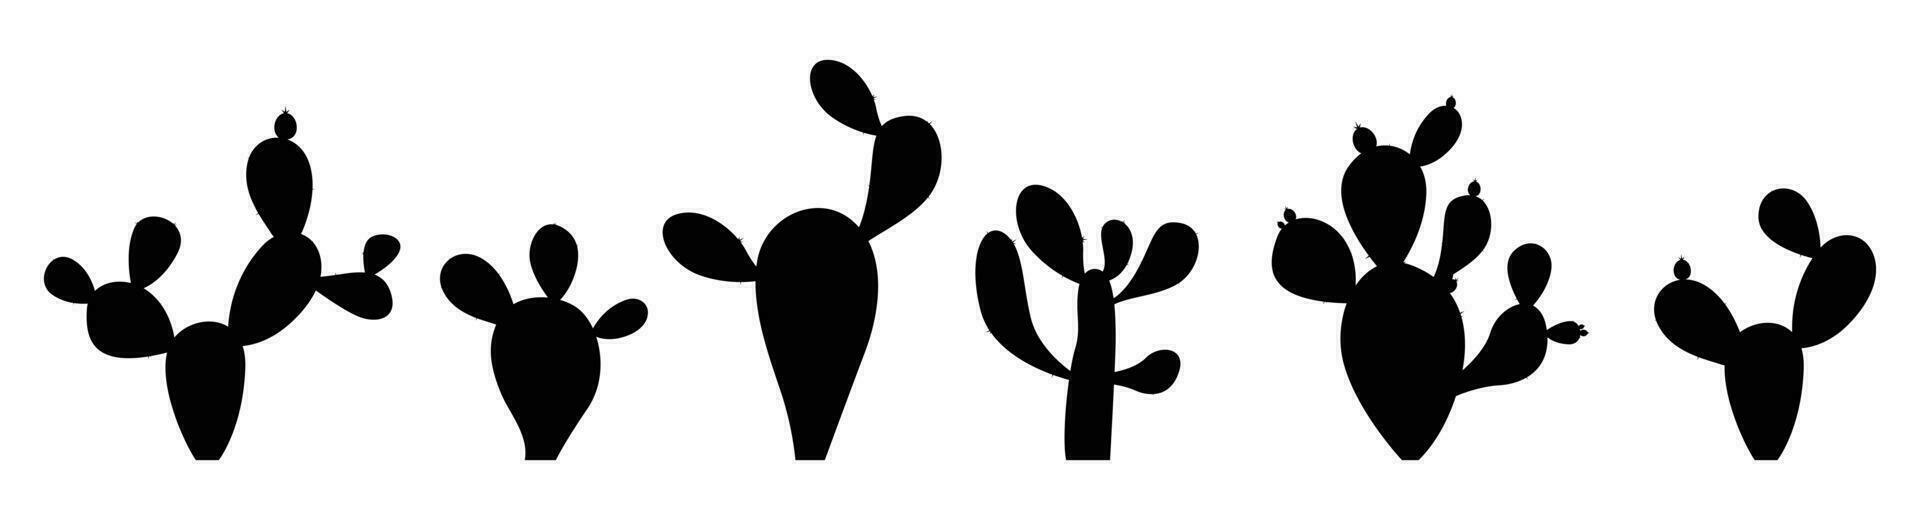 silueta dibujos animados Desierto cactus plantas aislado en blanco vector